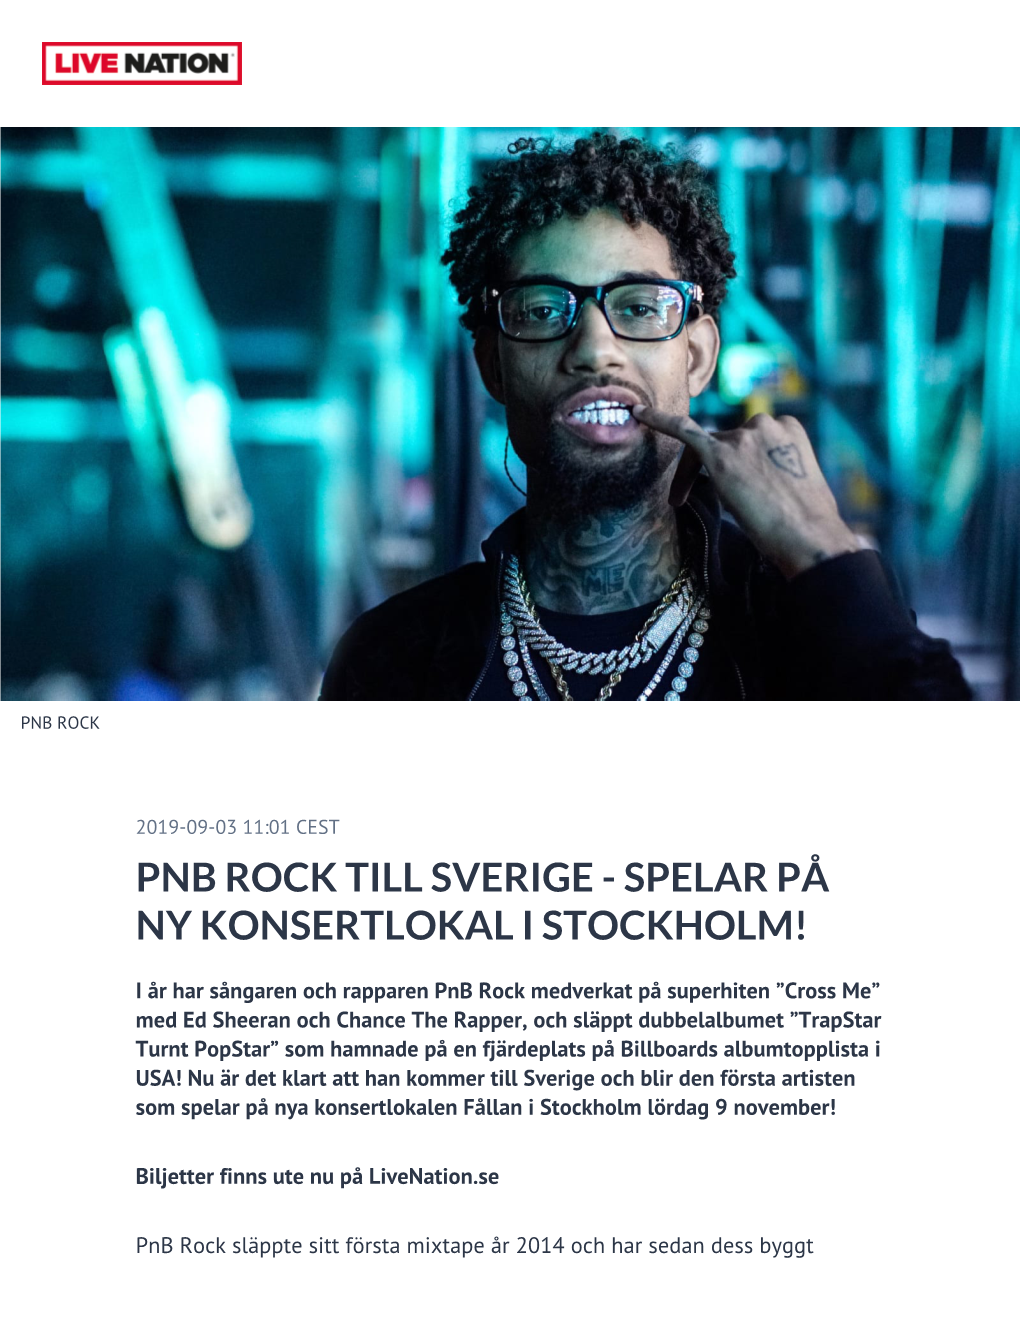 Pnb Rock Till Sverige - Spelar På Ny Konsertlokal I Stockholm!